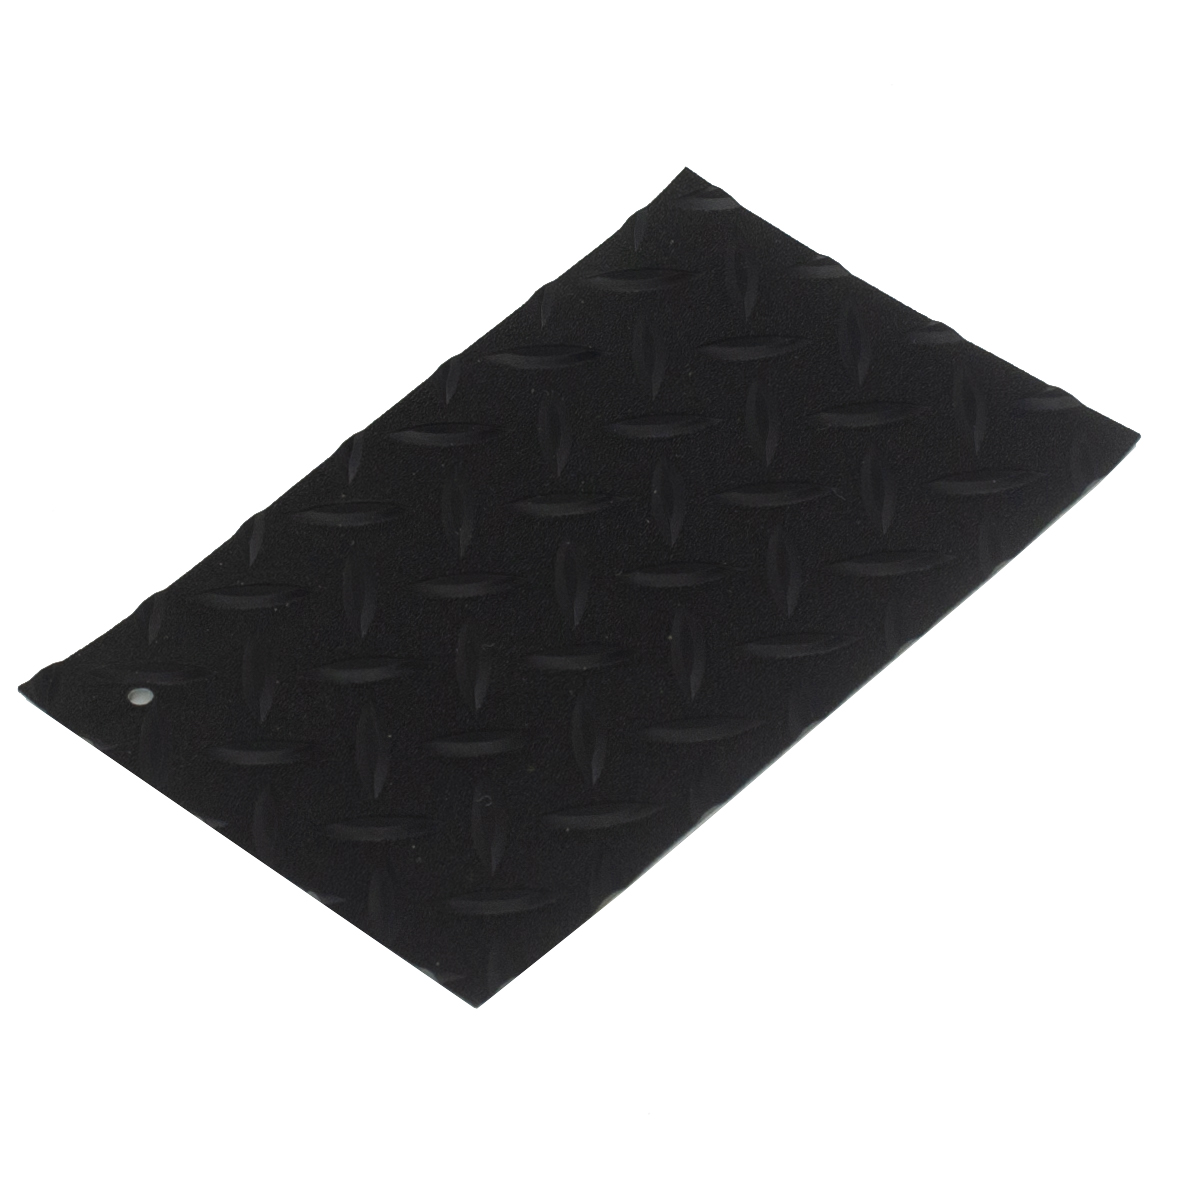 Textured Anti-Slip PVC Flooring For Basement